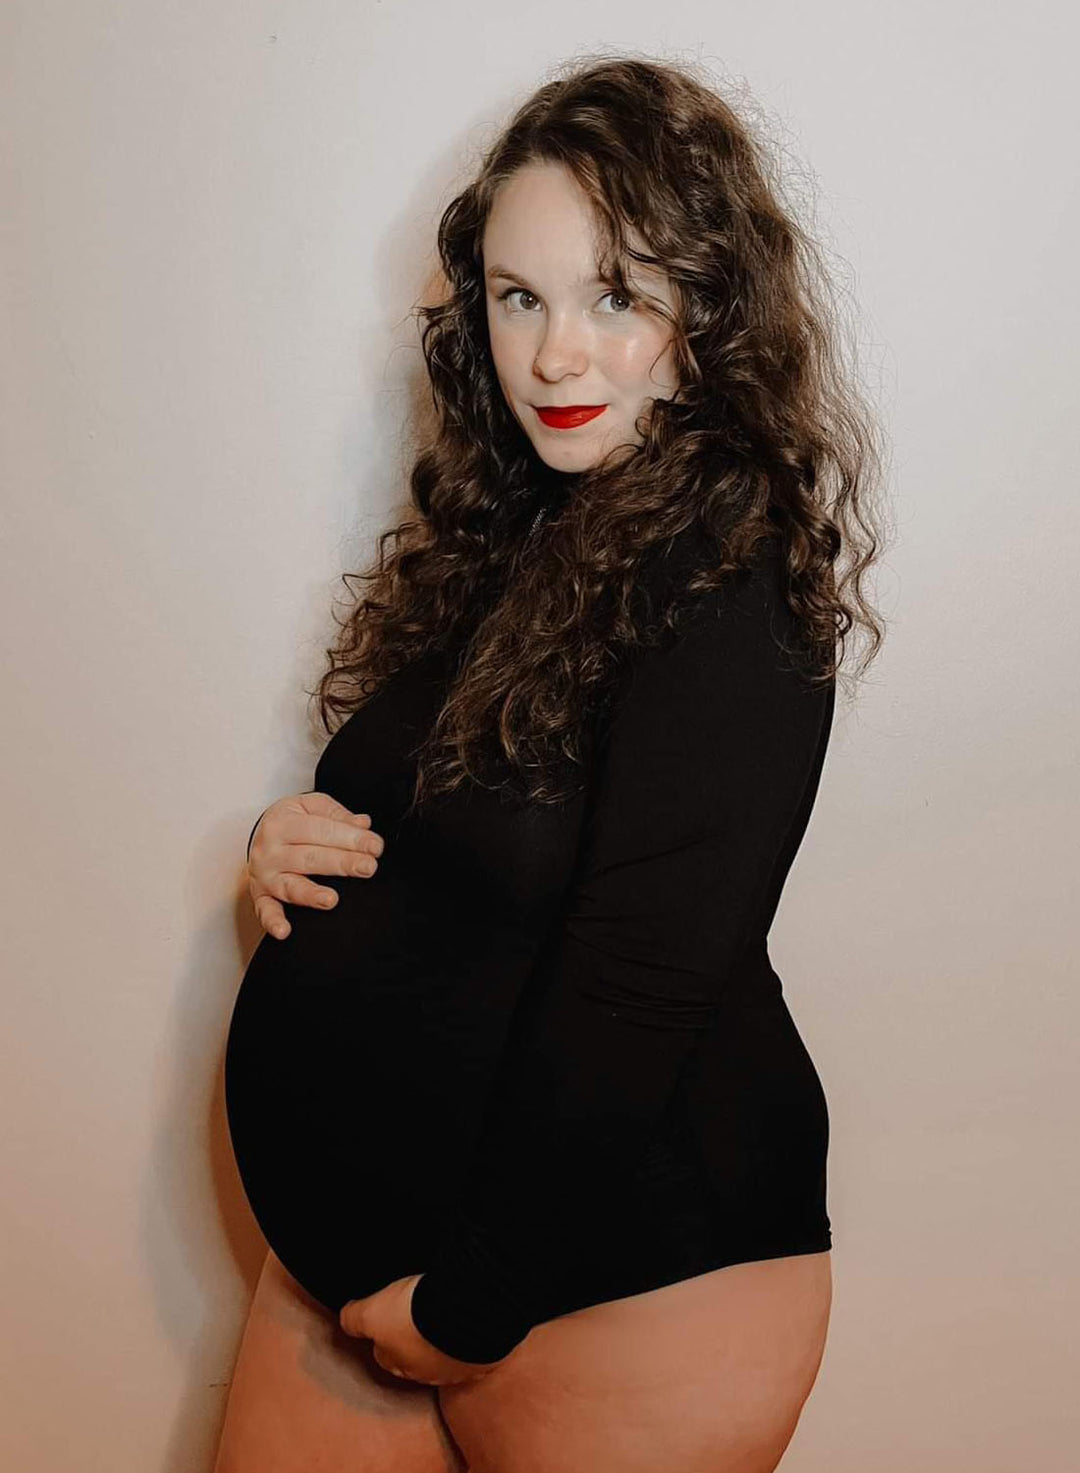  Bhome Maternity Bodysuit for Photoshoot V Neck Short